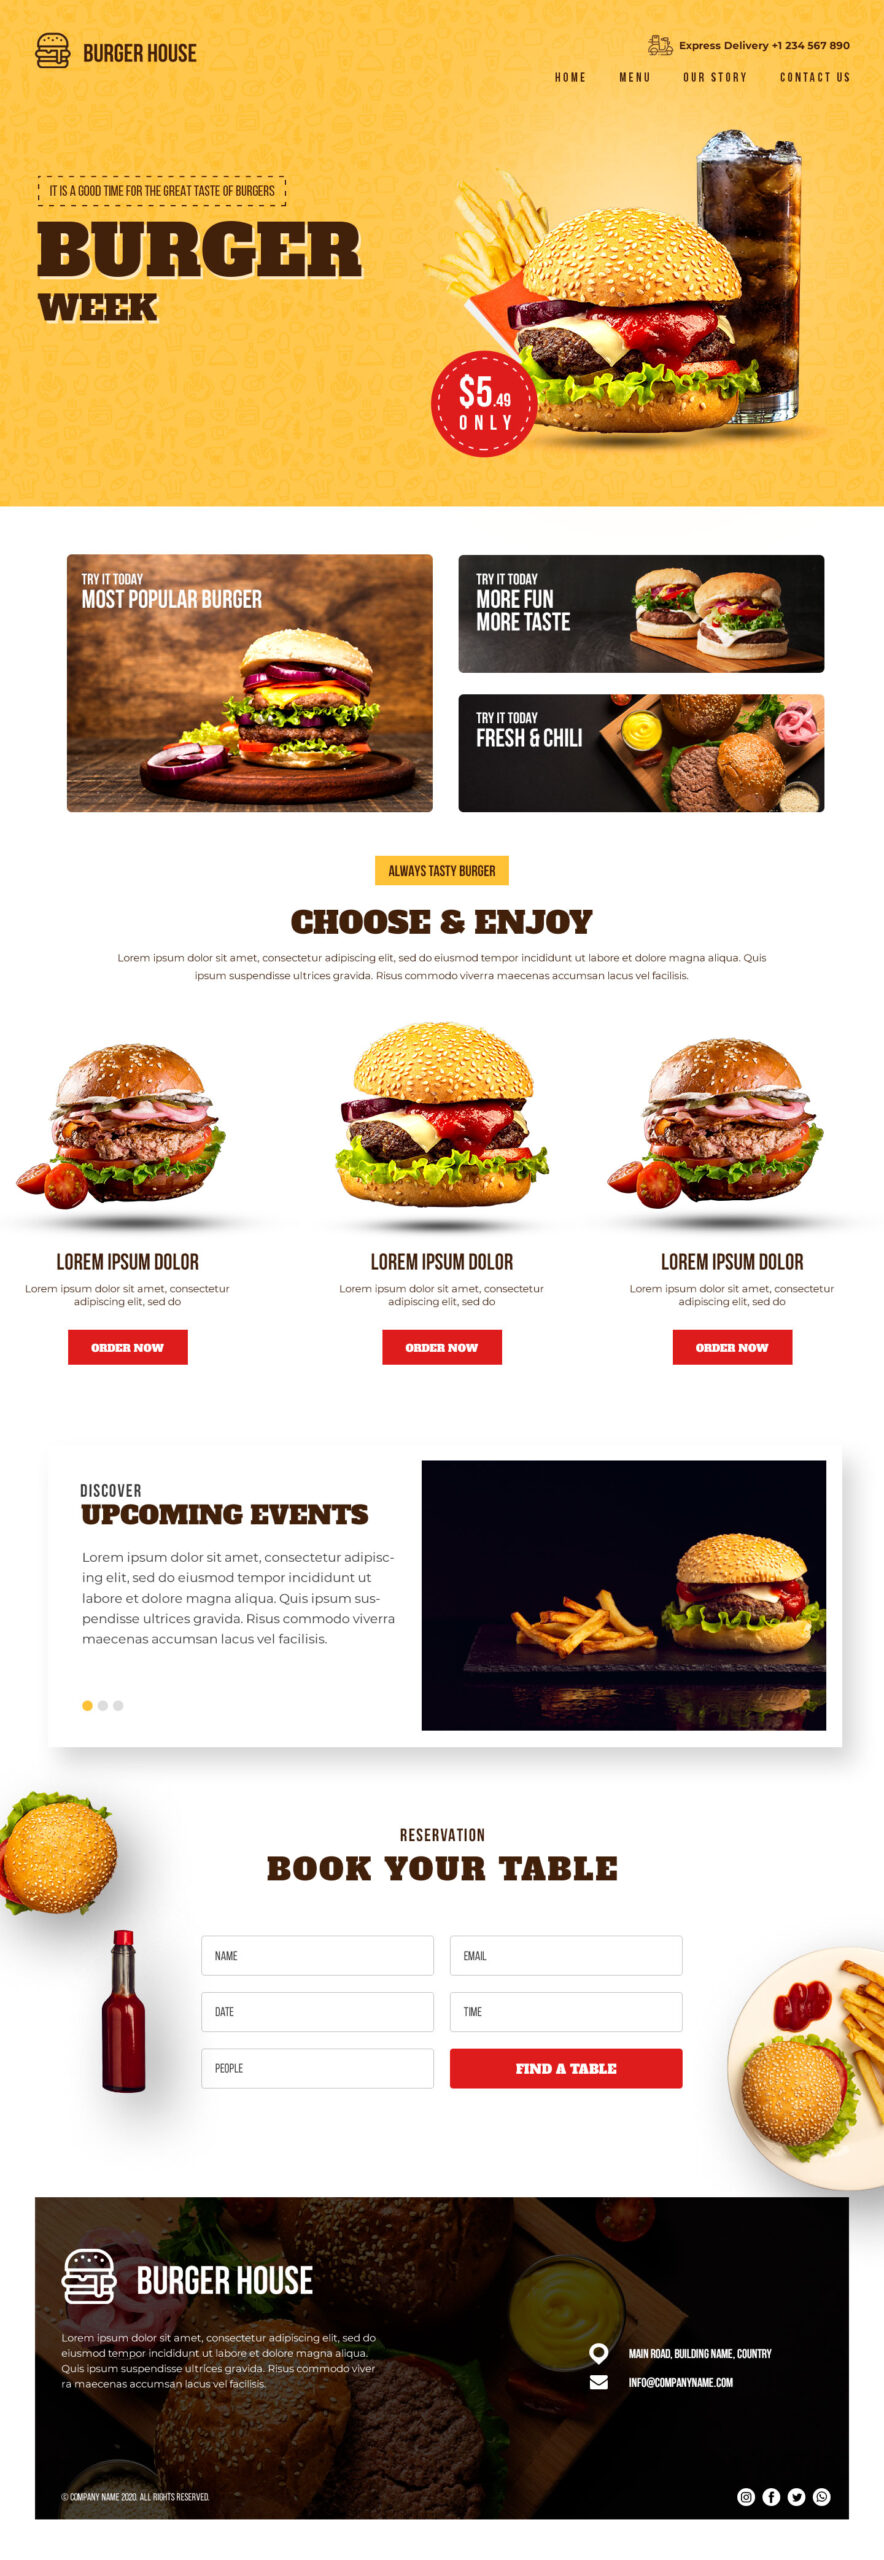 Burgers Week Site